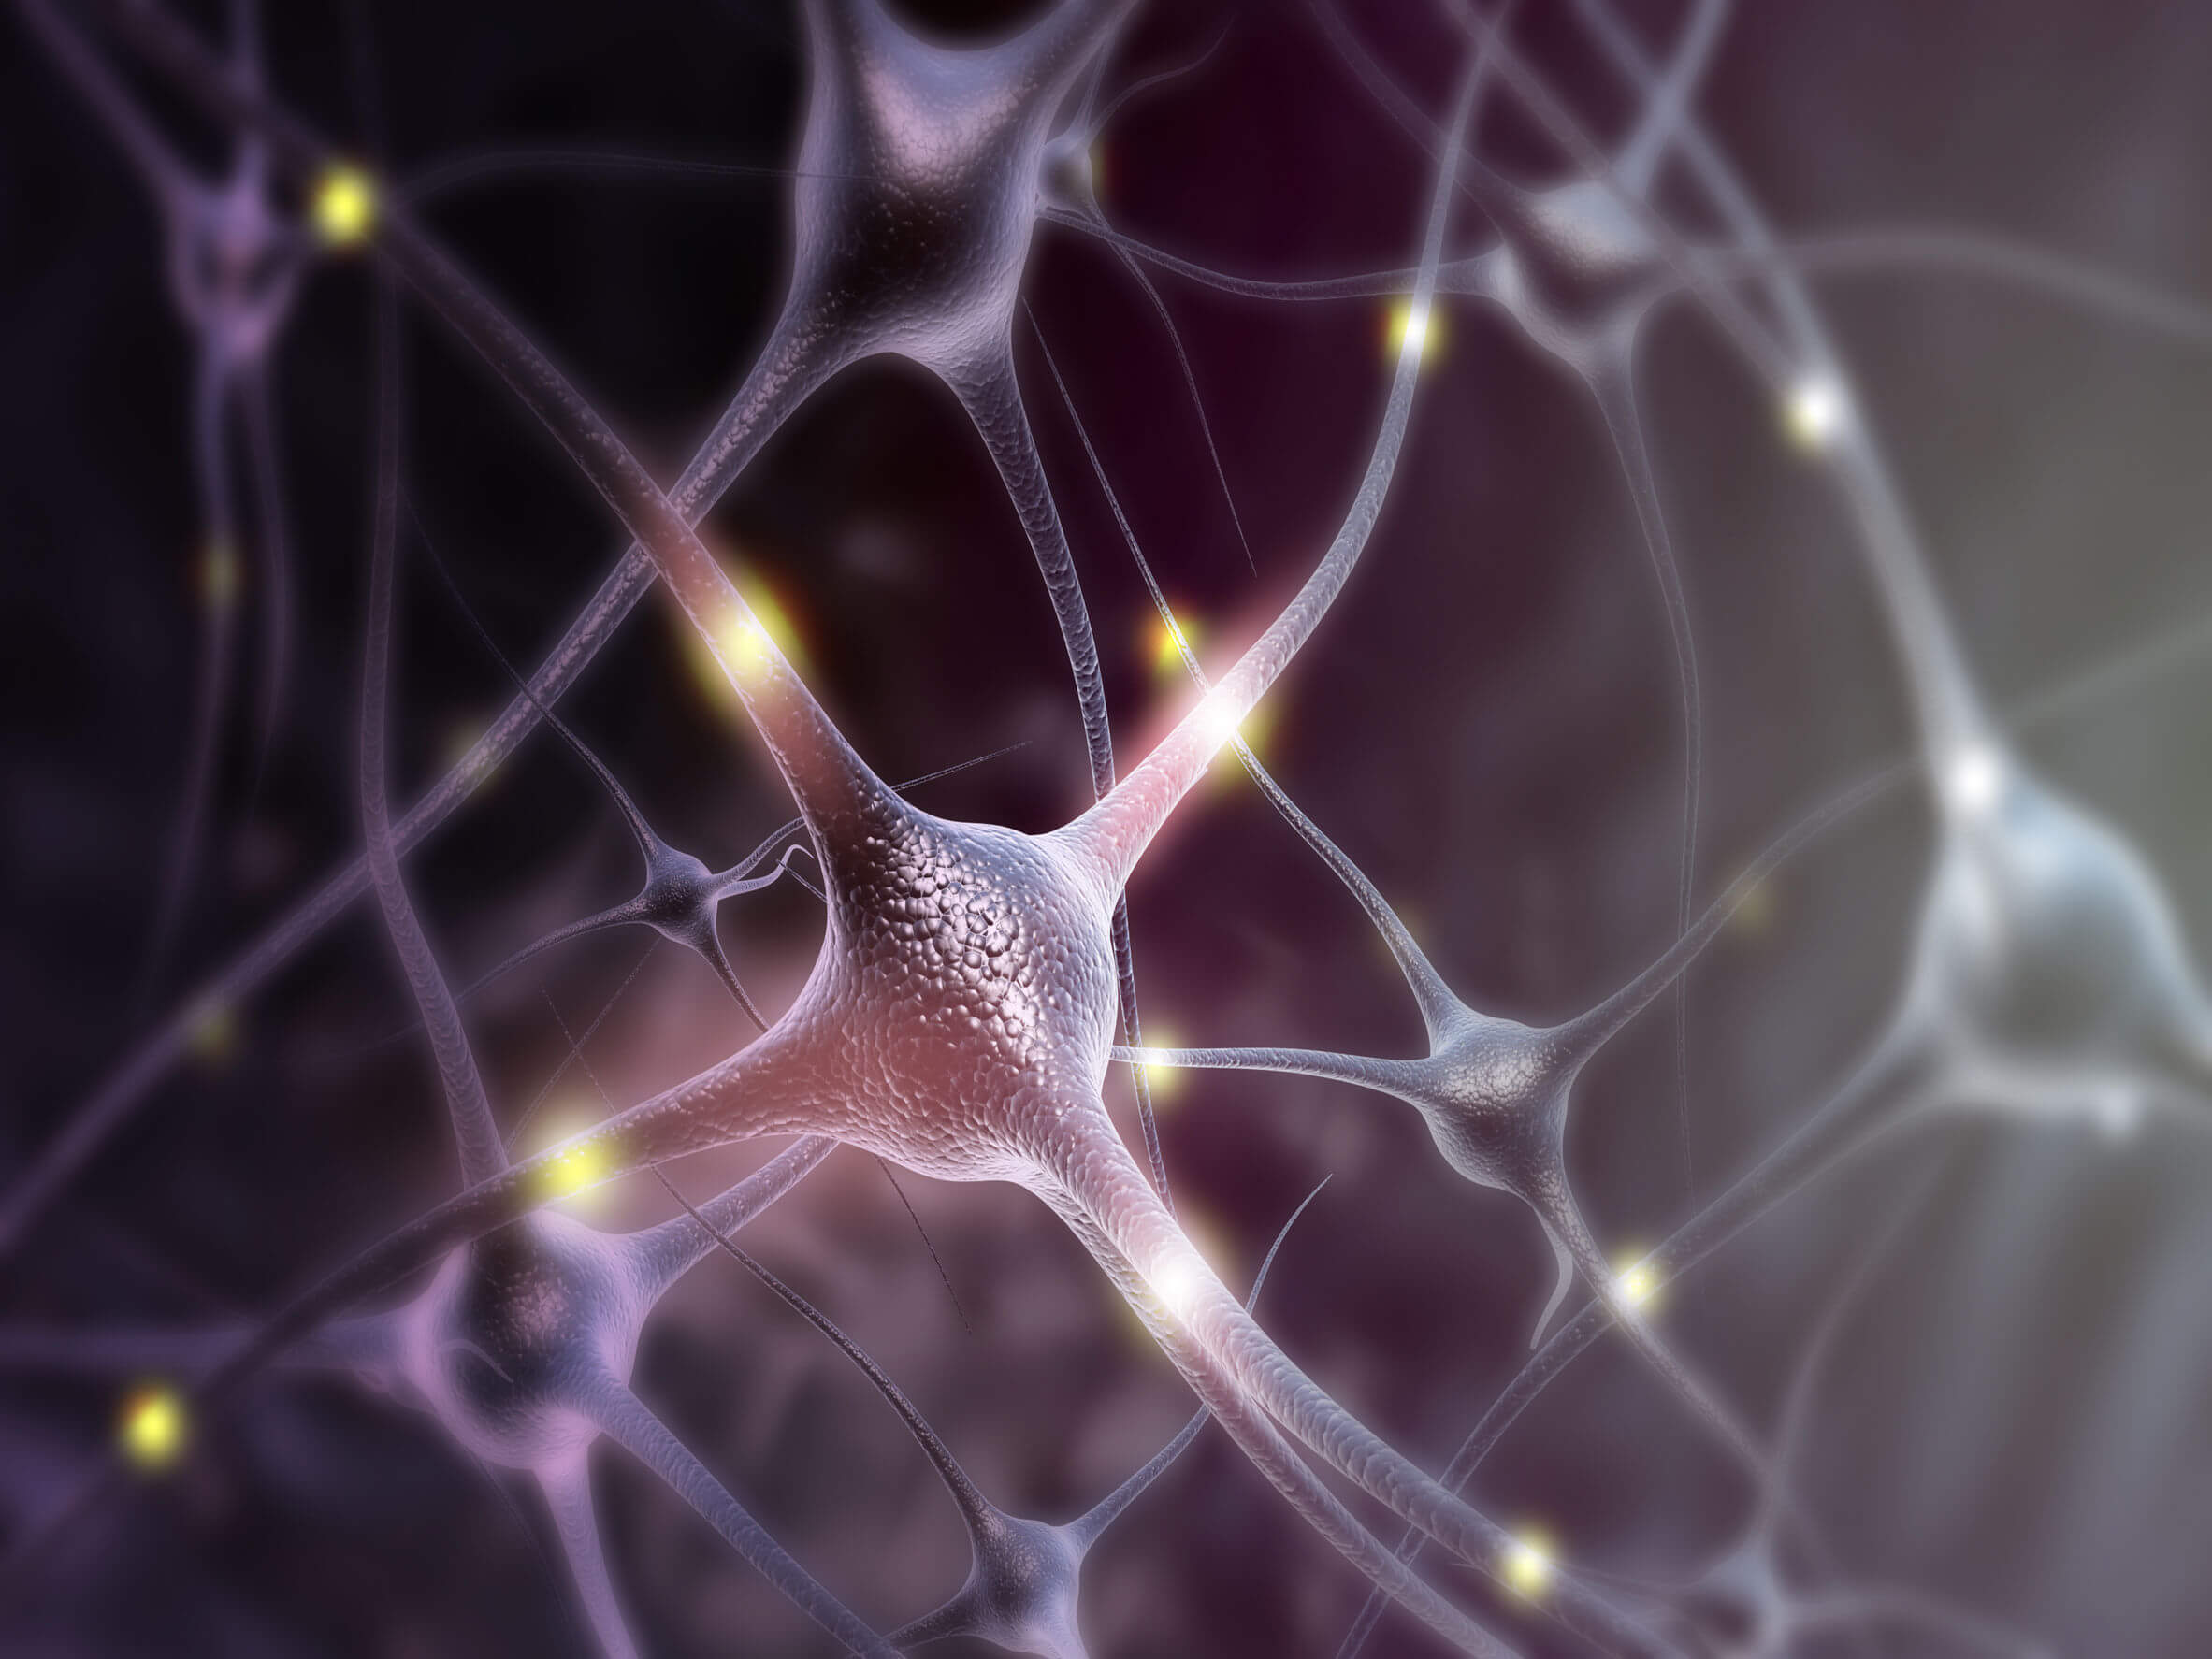 El factor neurotrófico puede influenciar la actividad de las neuronas.